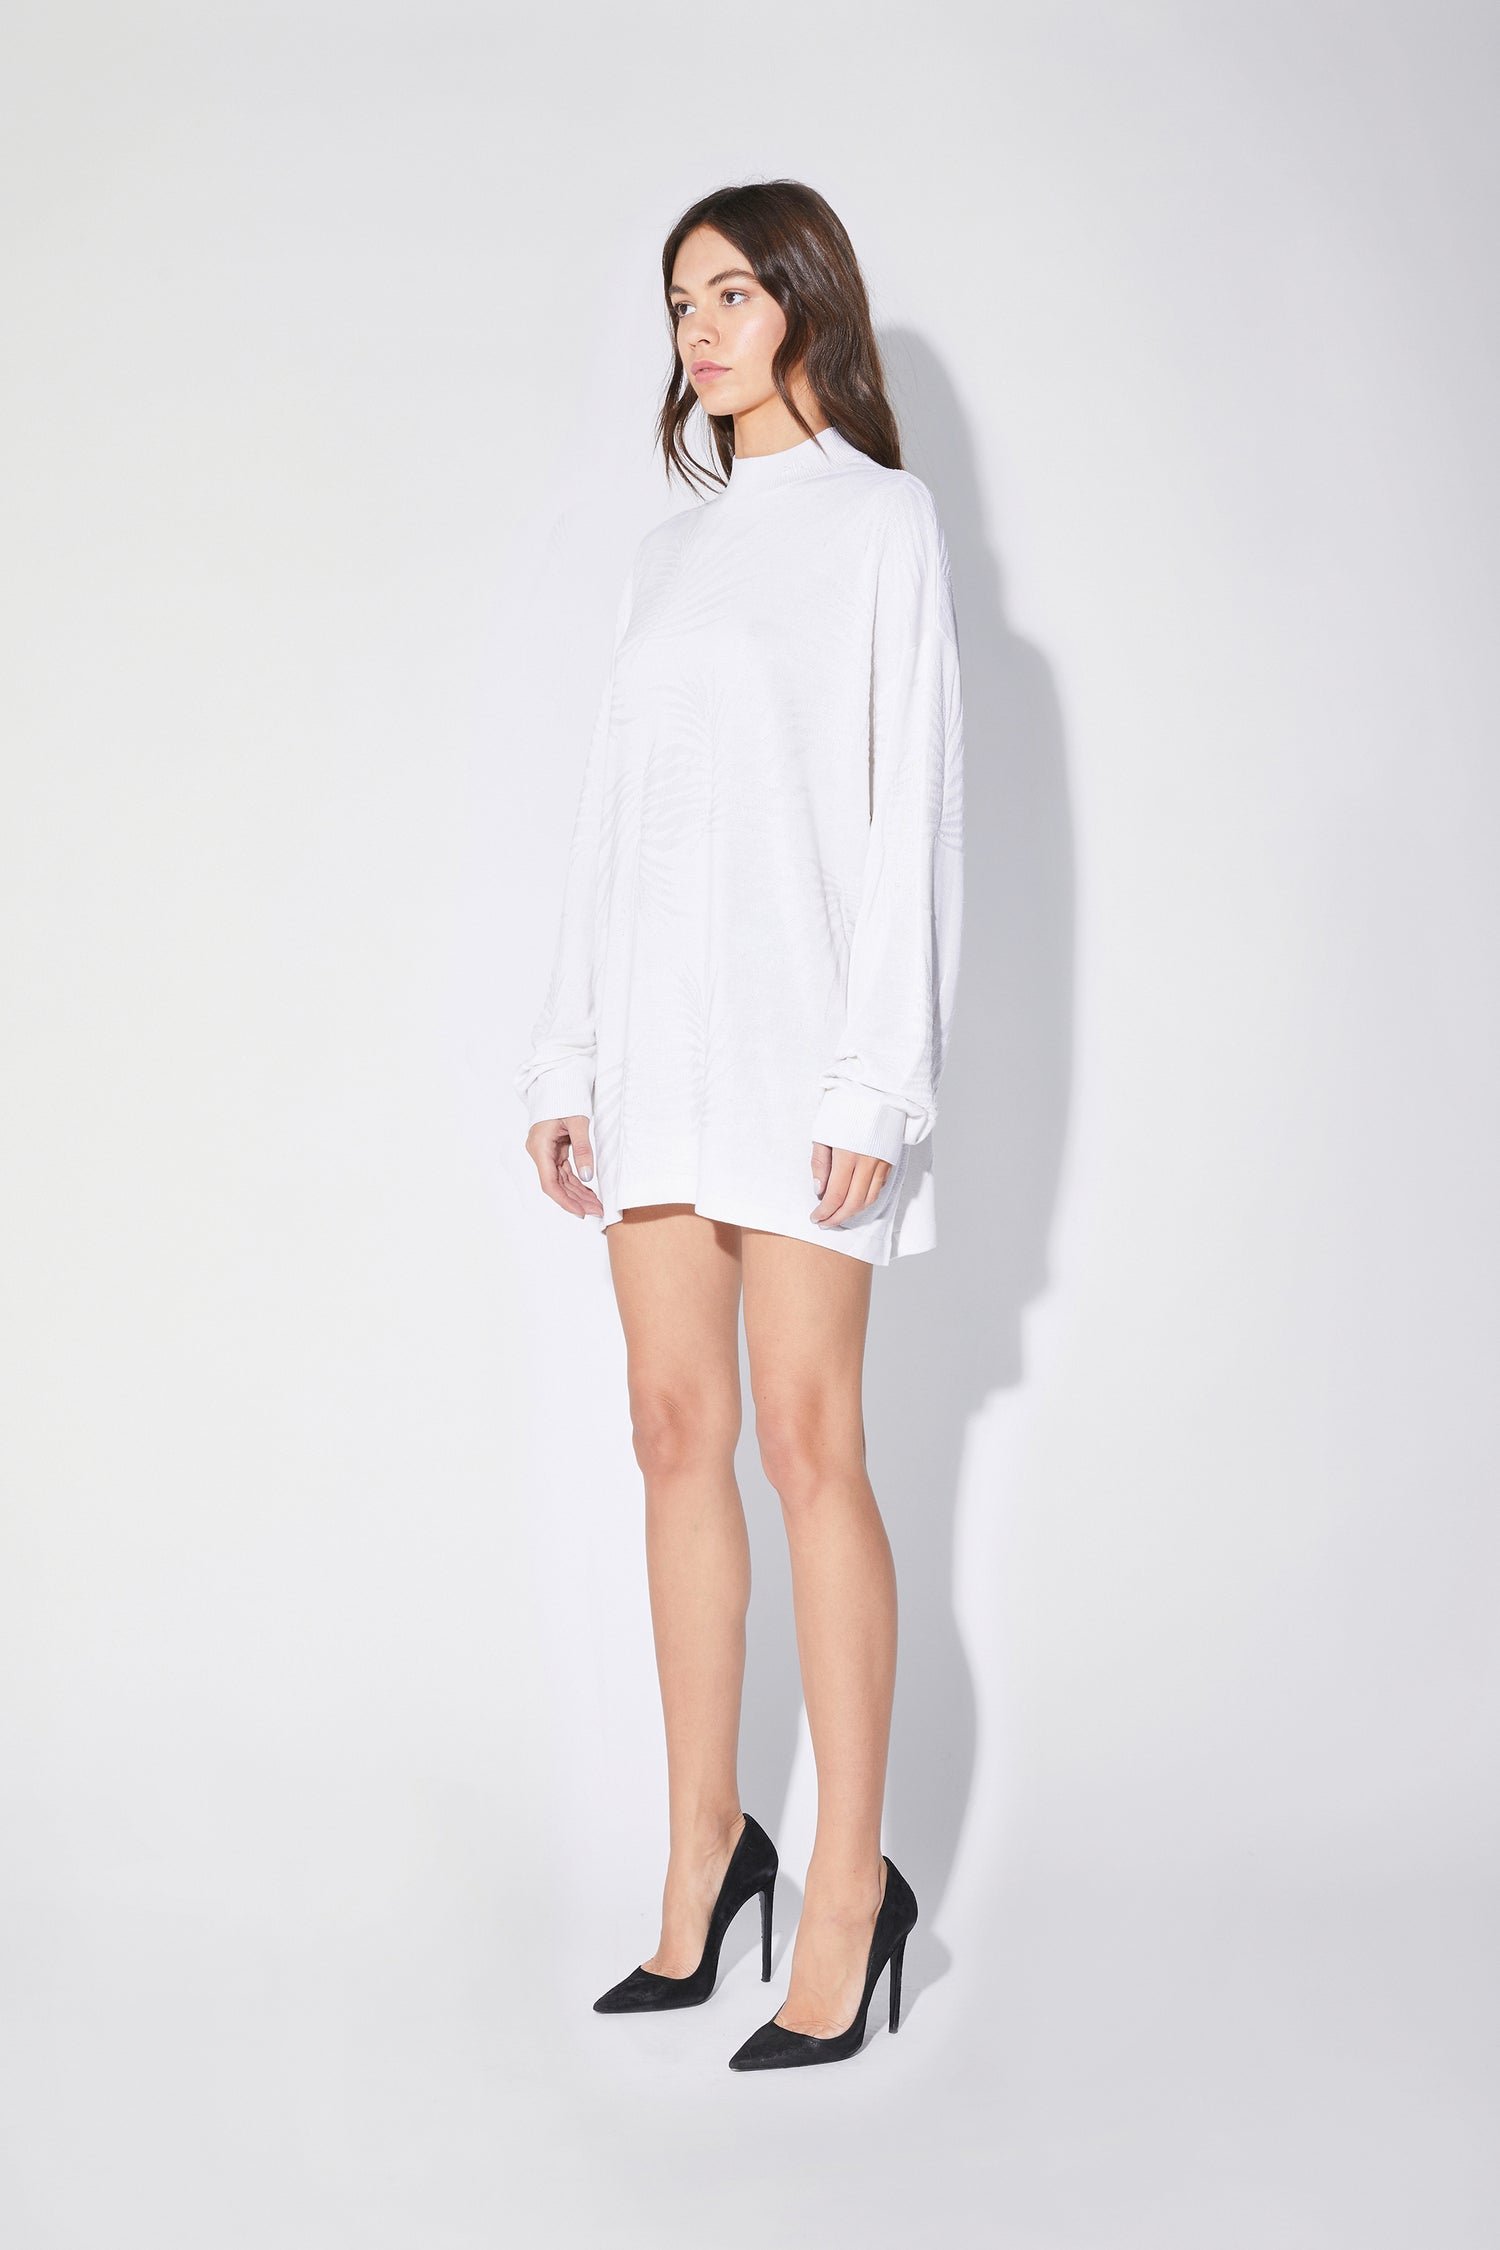 CASSIA DRESS | WHITE TROPICAL